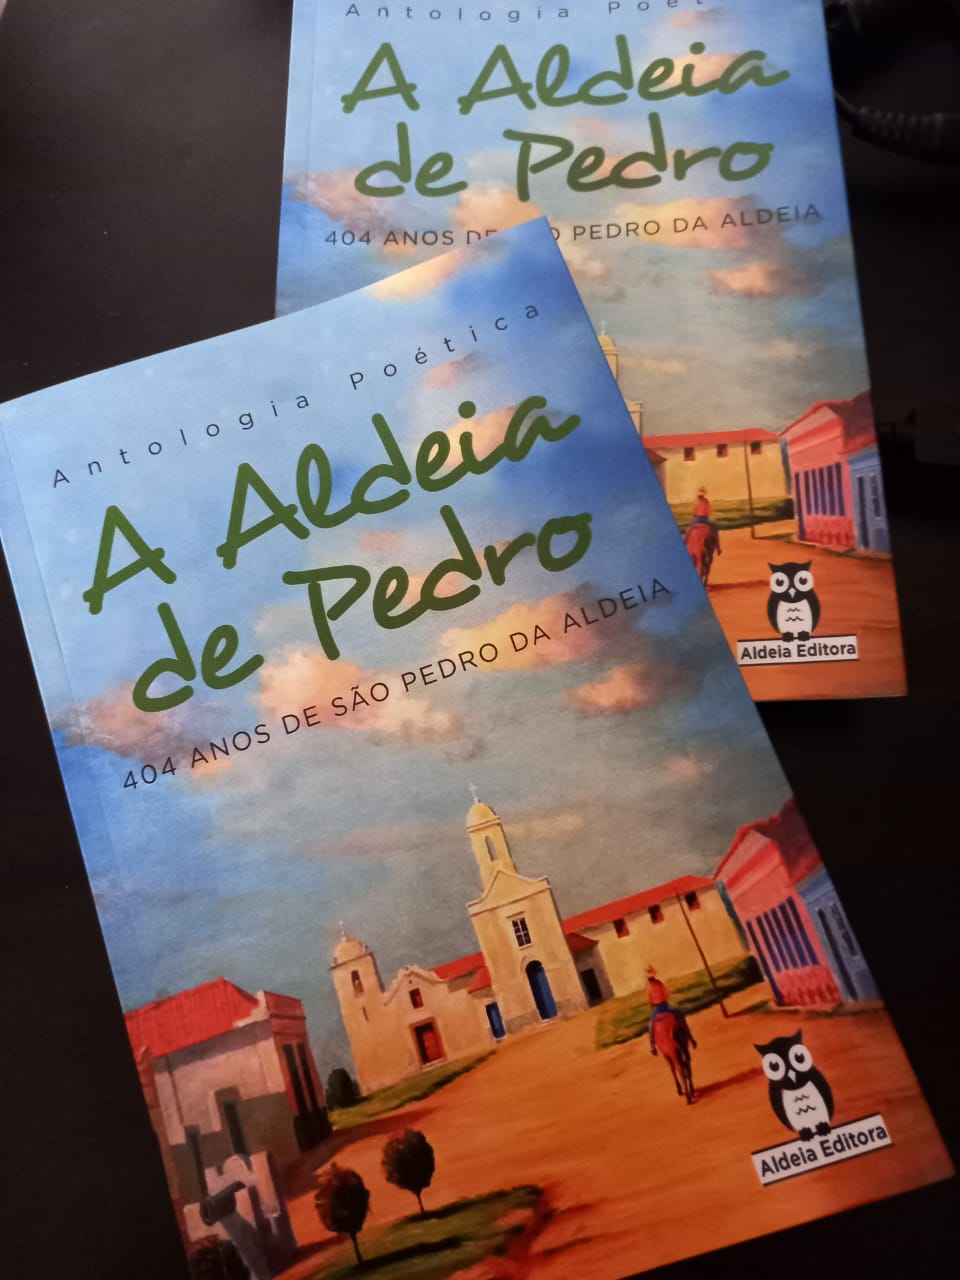 Aldeia Editora comemora lançamento da Antologia Poética A Aldeia de Pedro